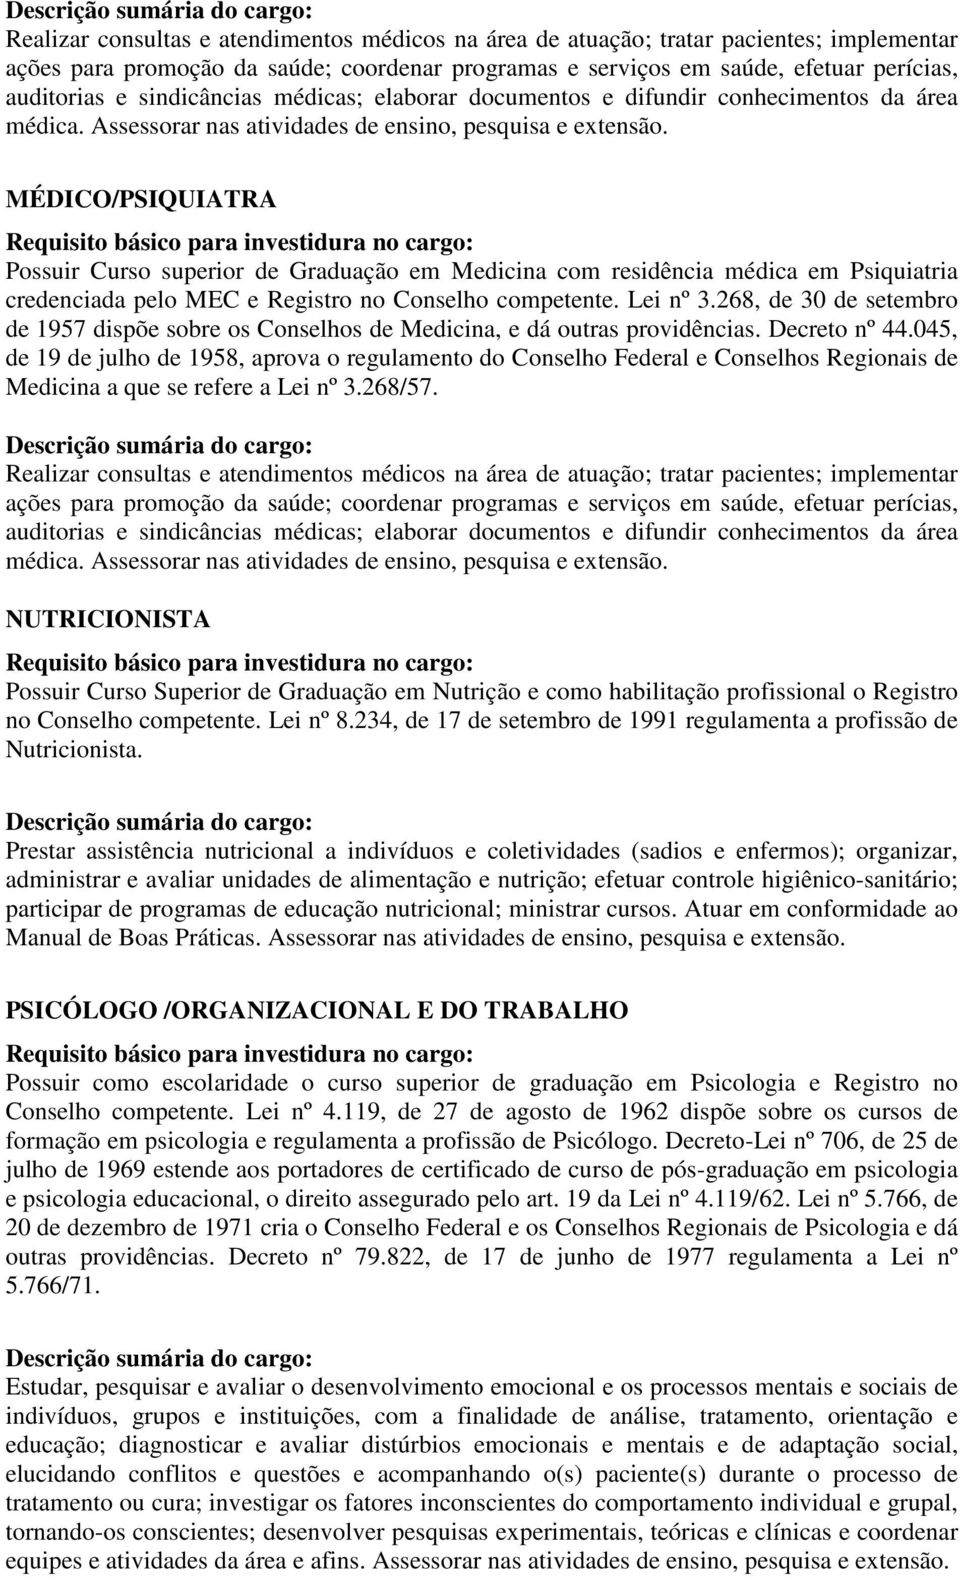 MÉDICO/PSIQUIATRA Possuir Curso superior de Graduação em Medicina com residência médica em Psiquiatria credenciada pelo MEC e Registro no Conselho competente. Lei nº 3.